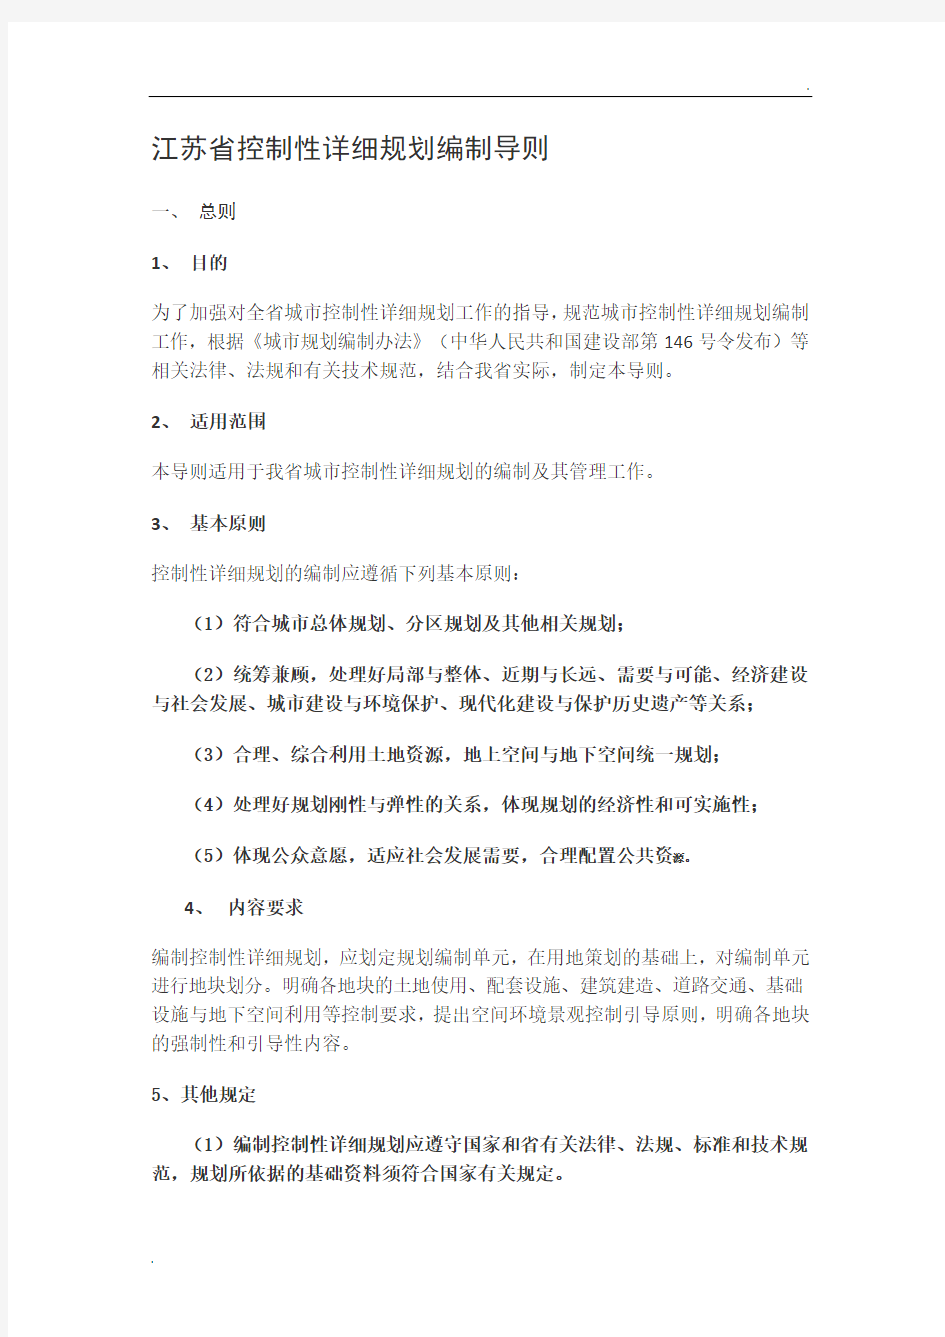 江苏省控制性详细规划编制导则(2012年修订)